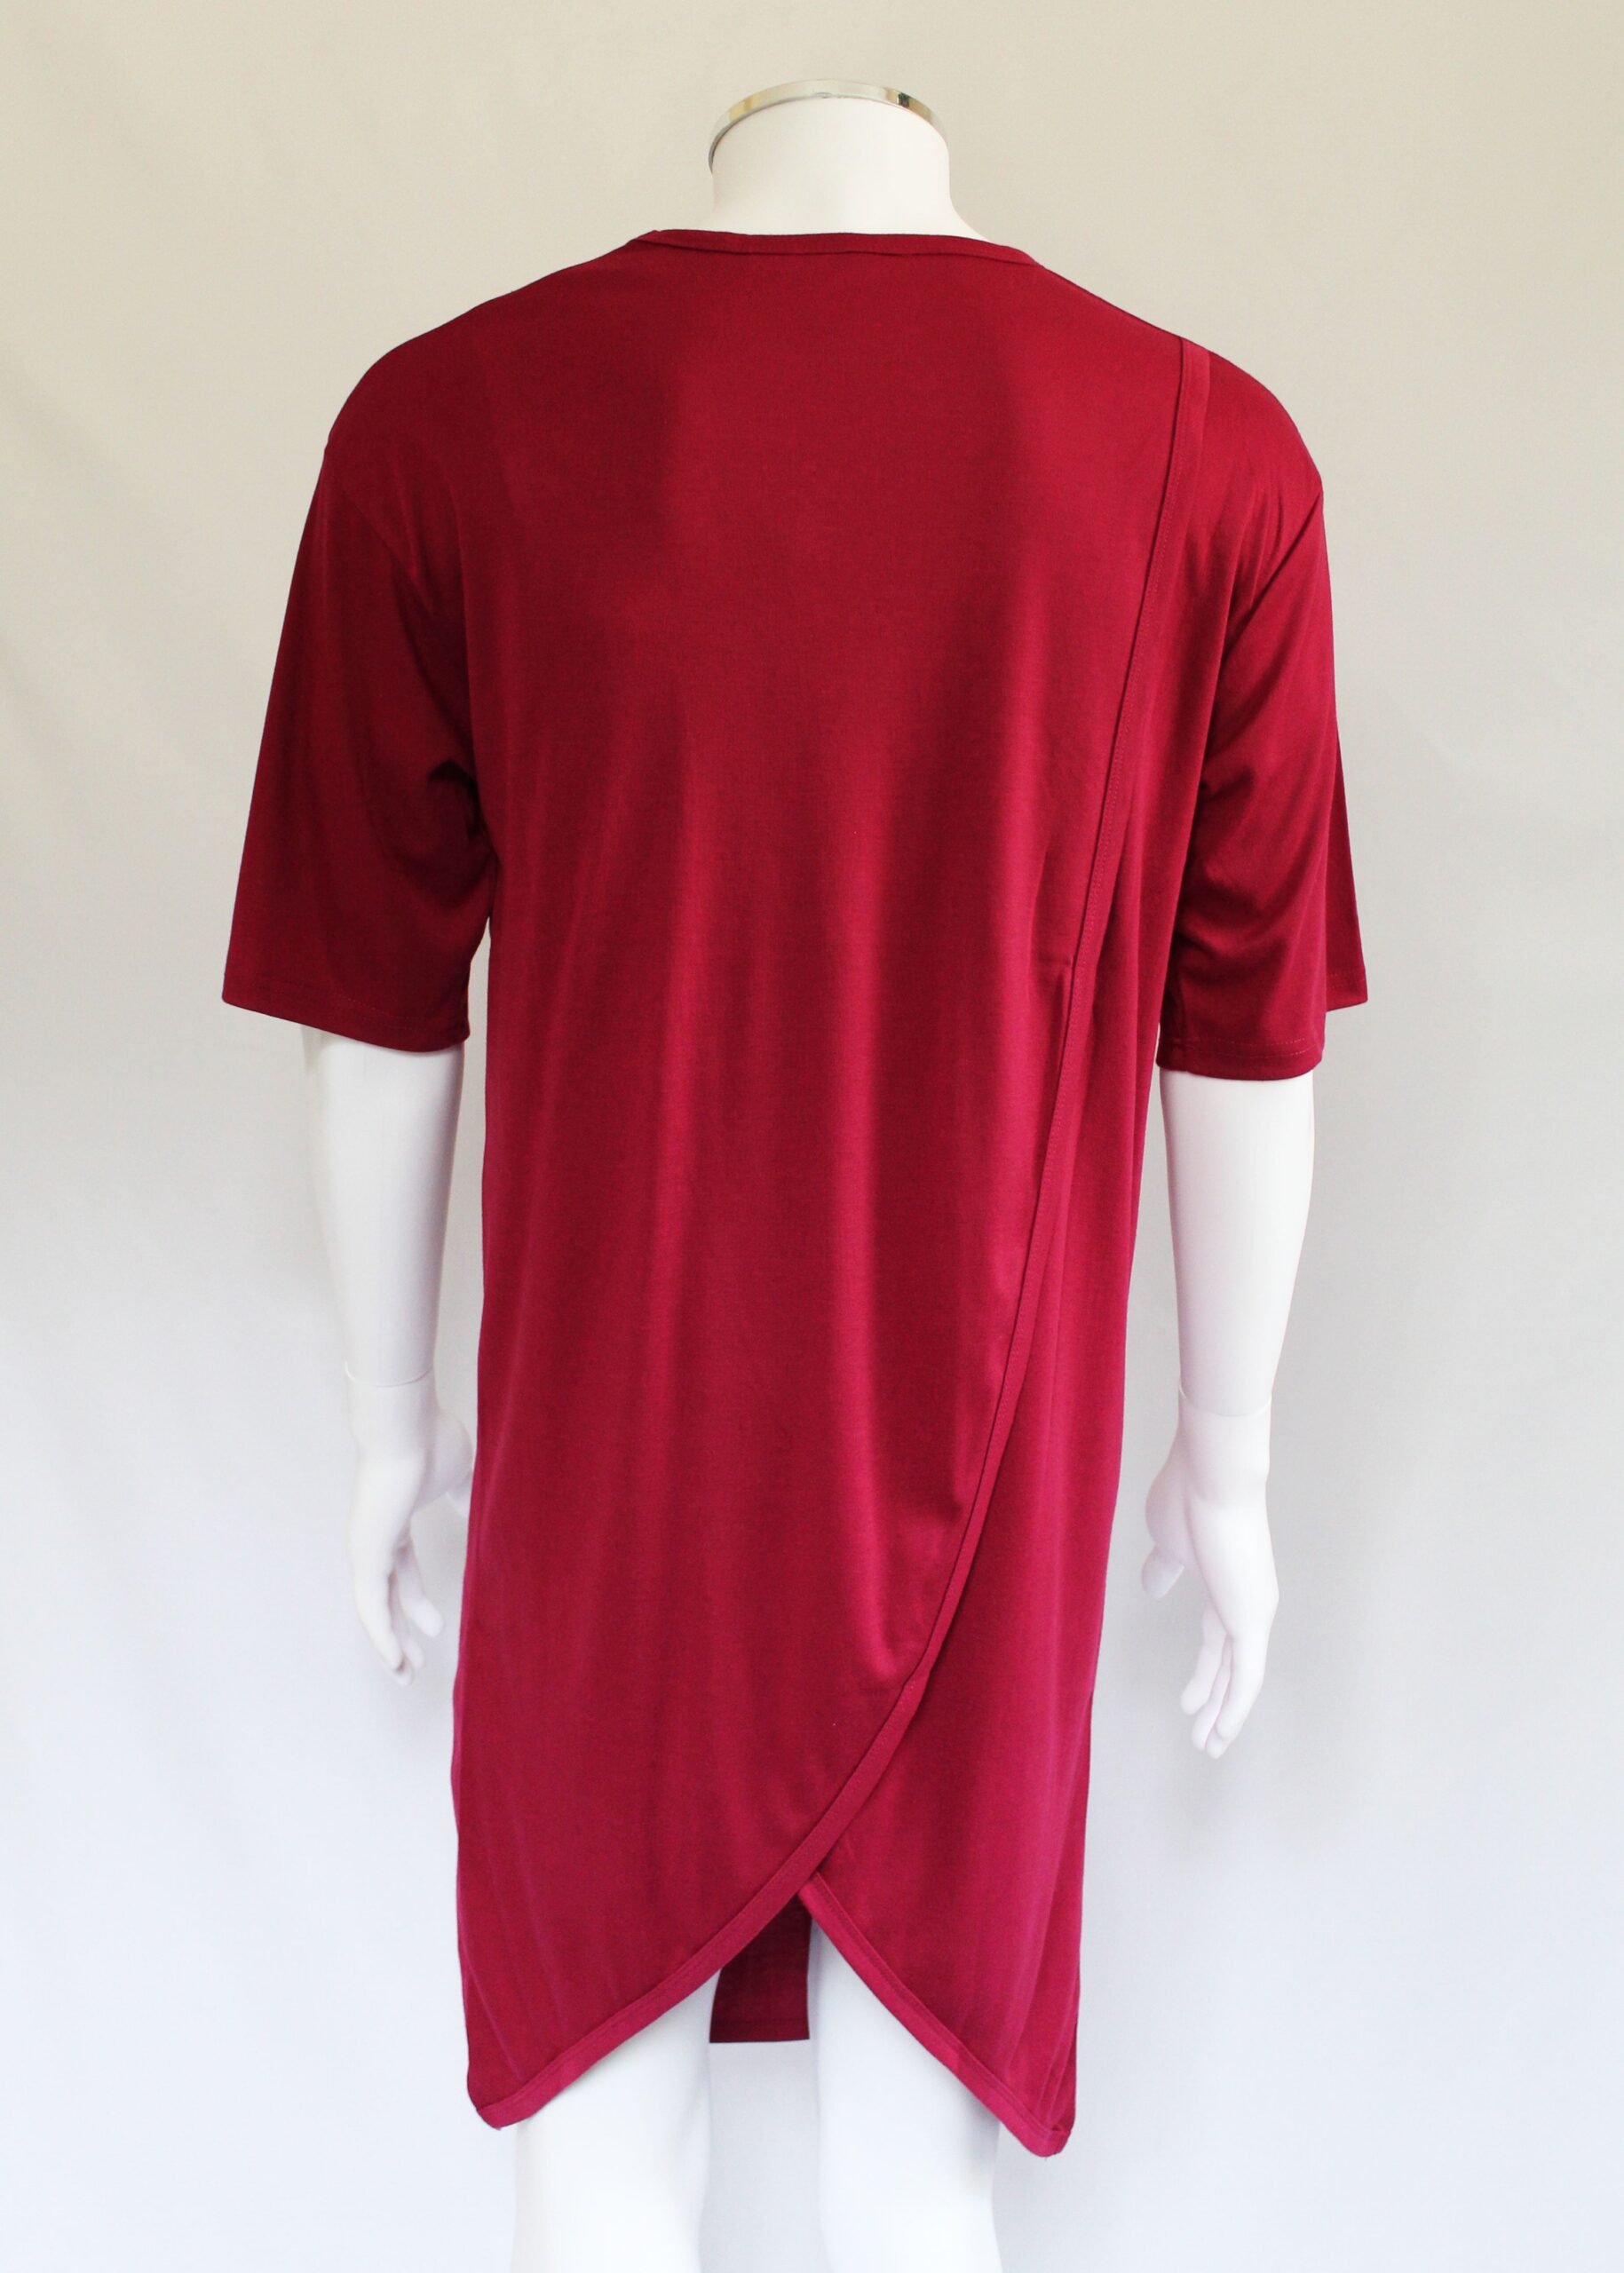 Petal Back Open Back Nightshirt Short Sleeve - Red